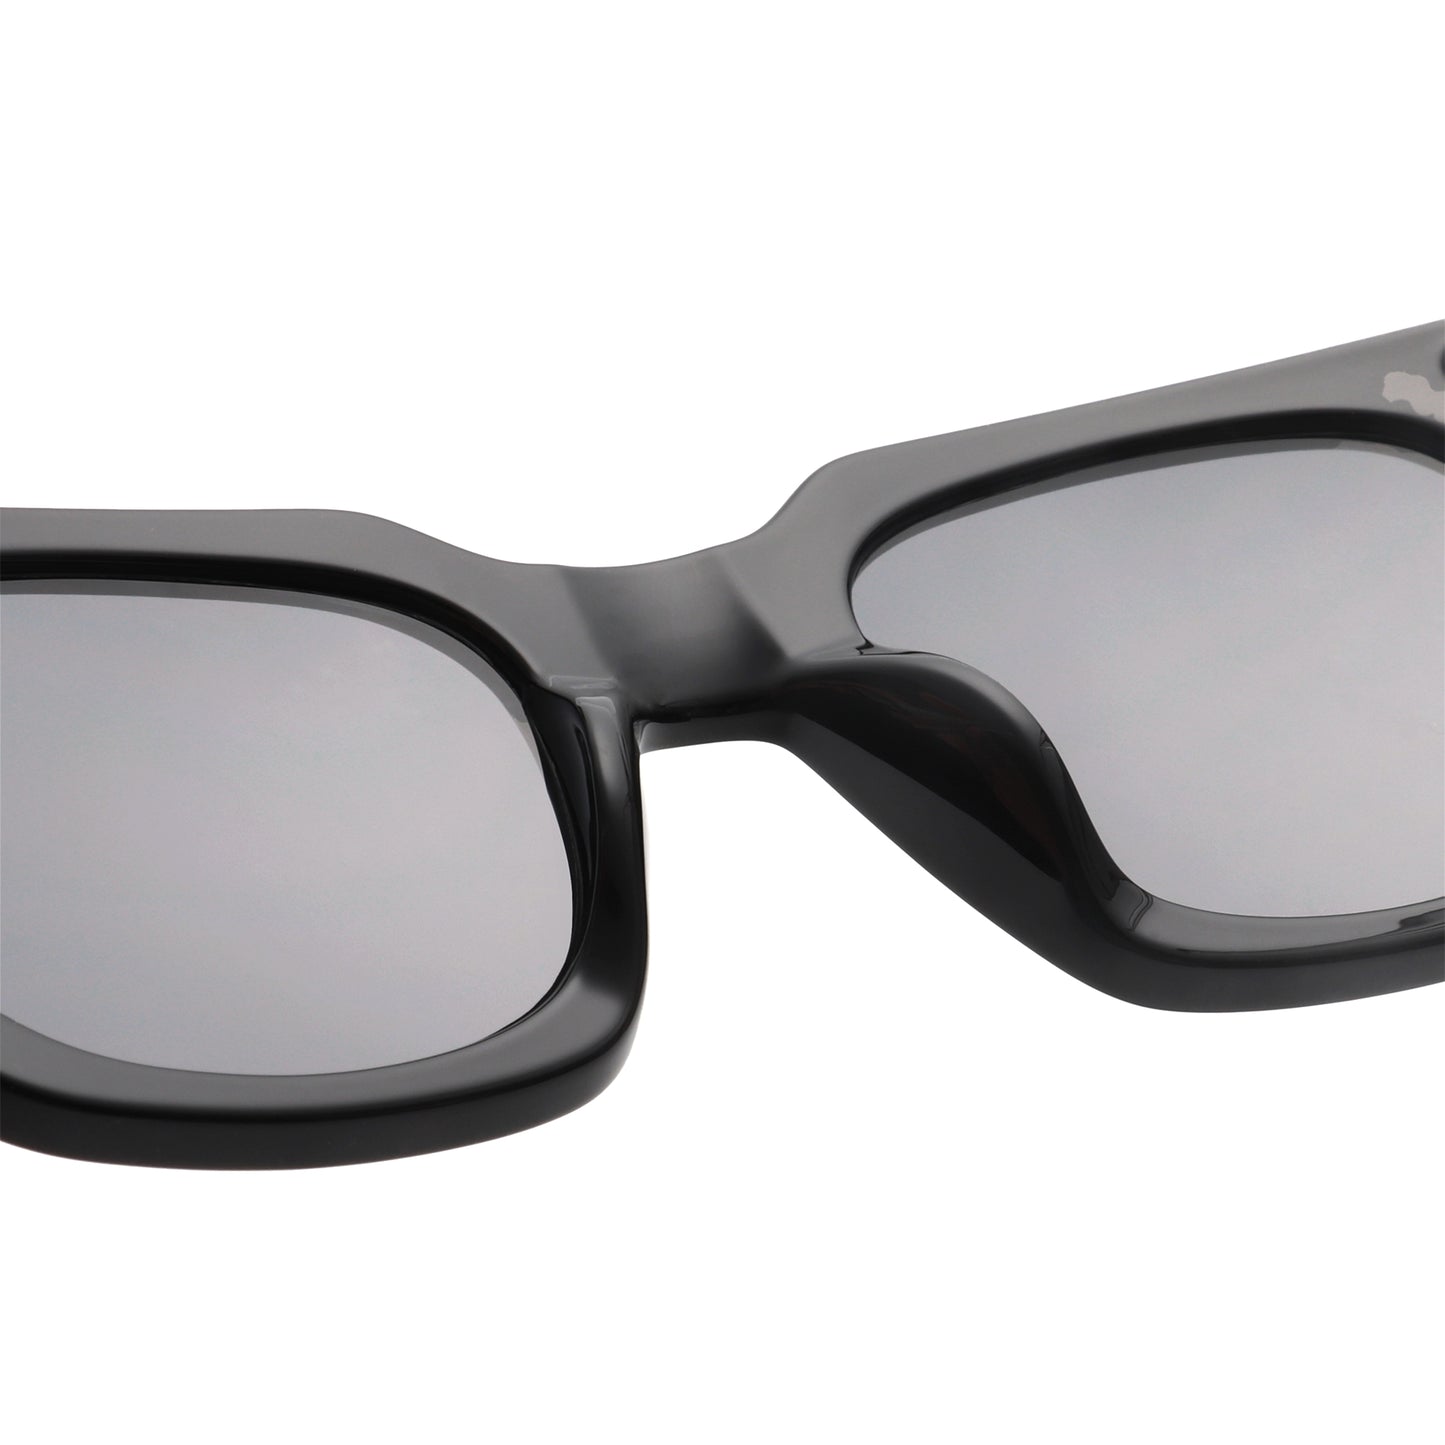 A.Kjaerbede Nancy Sunglasses in Black color